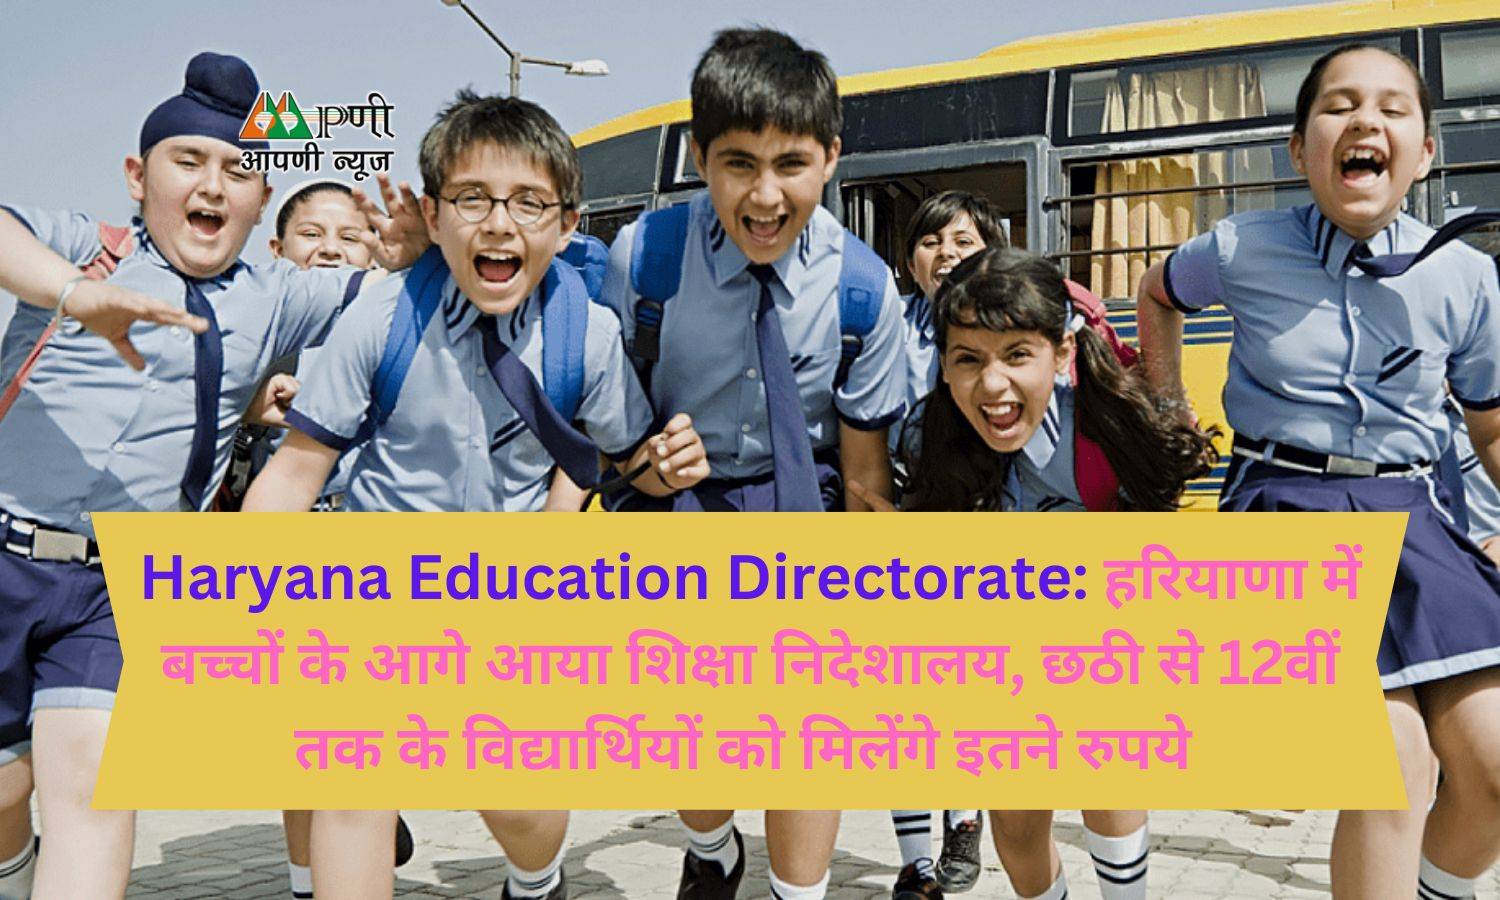 Haryana Education Directorate: हरियाणा में बच्चों के आगे आया शिक्षा निदेशालय, छठी से 12वीं तक के विद्यार्थियों को मिलेंगे इतने रुपये